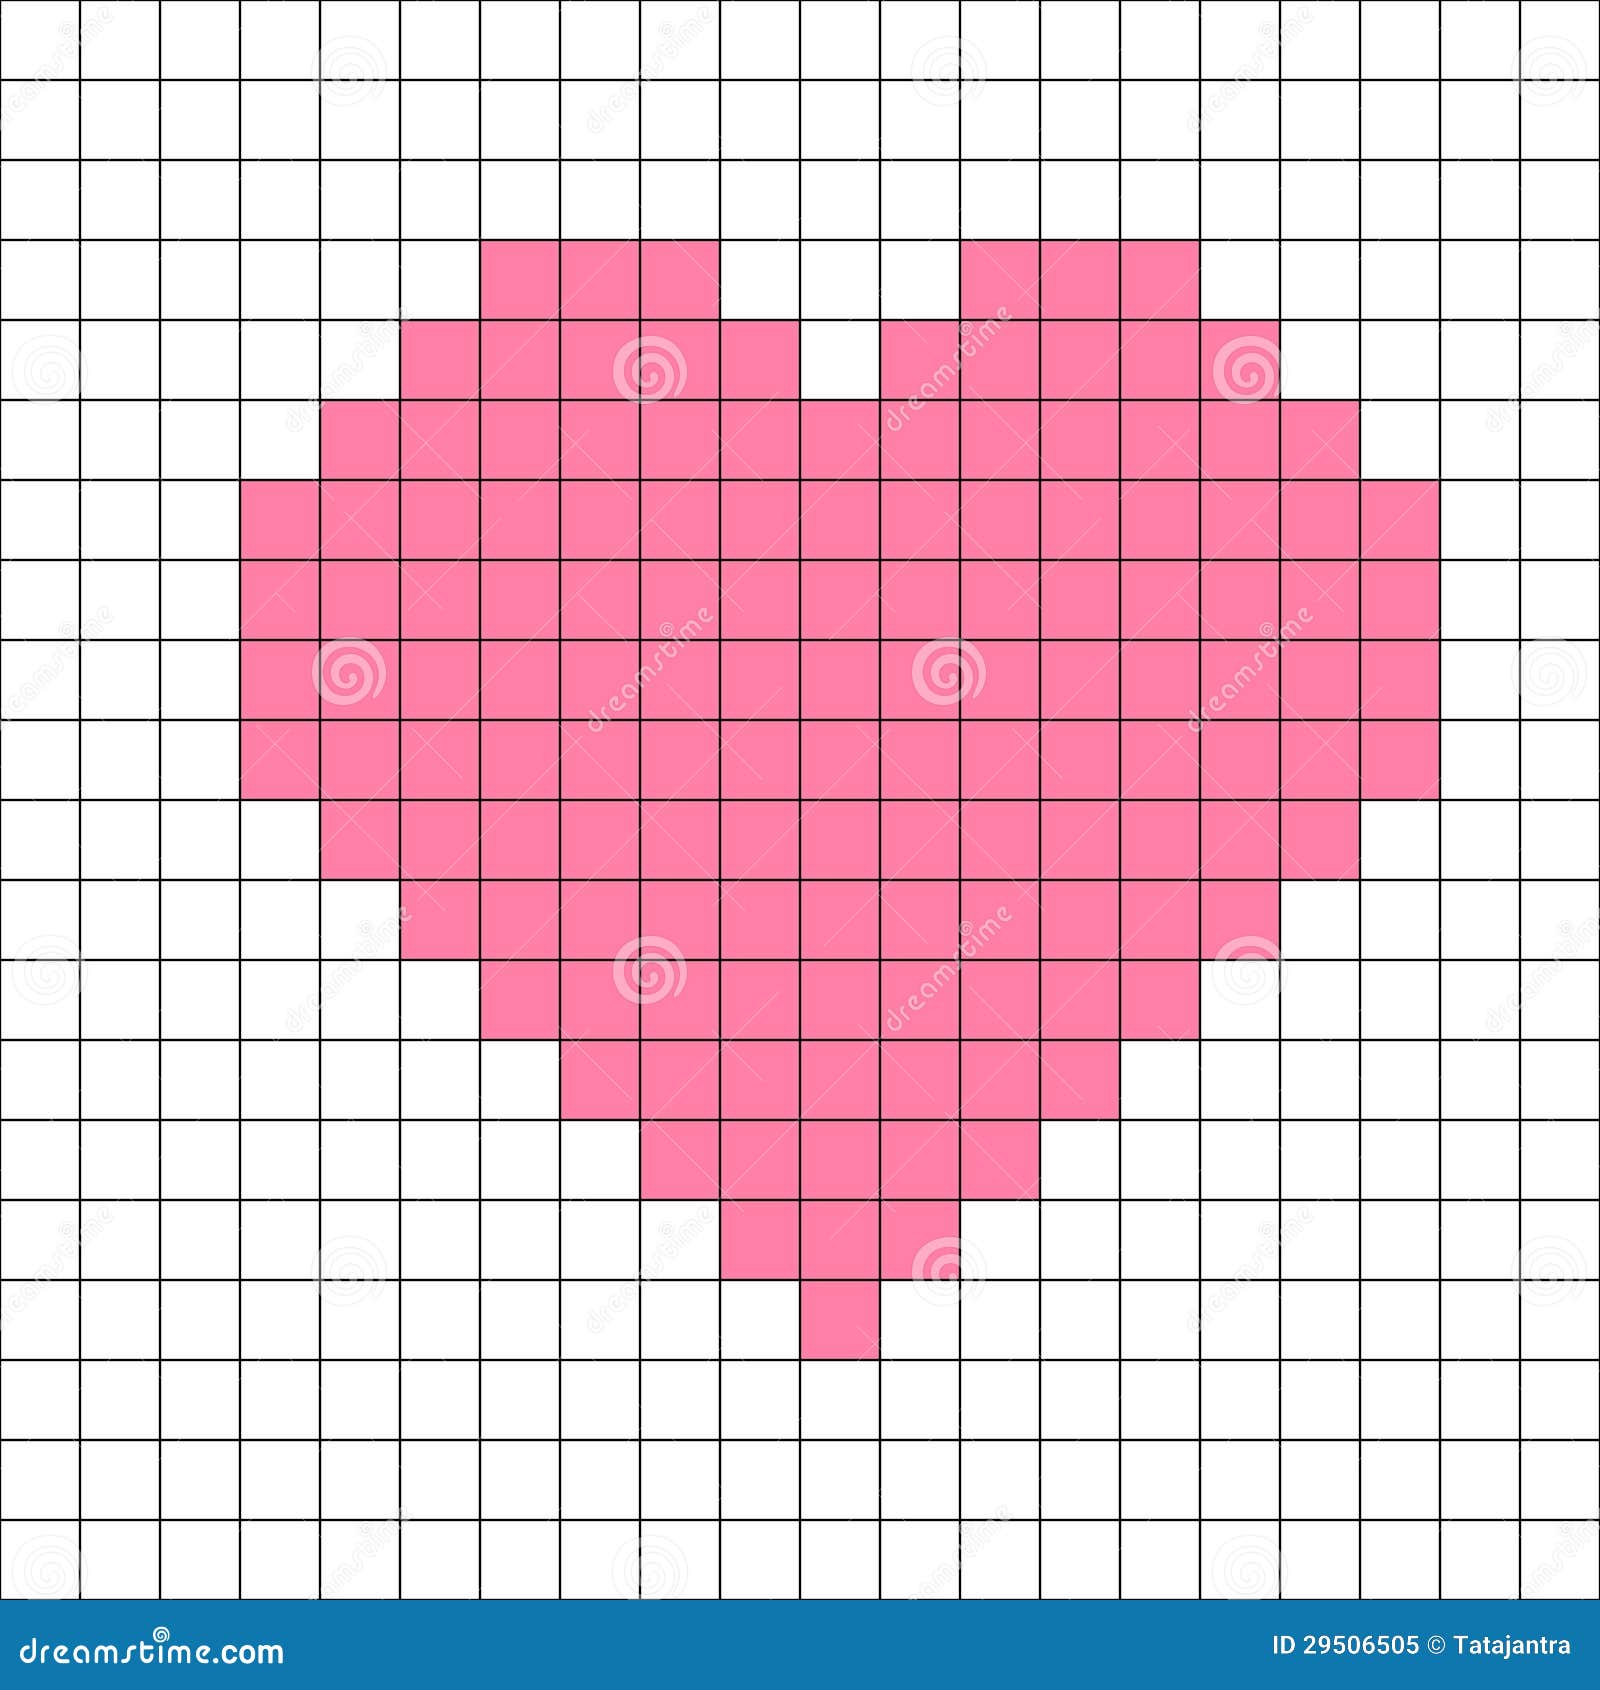 Как нарисовать по клеточкам в тетради сердечко: Рисунки по клеточкам сердечки в тетради для начинающих